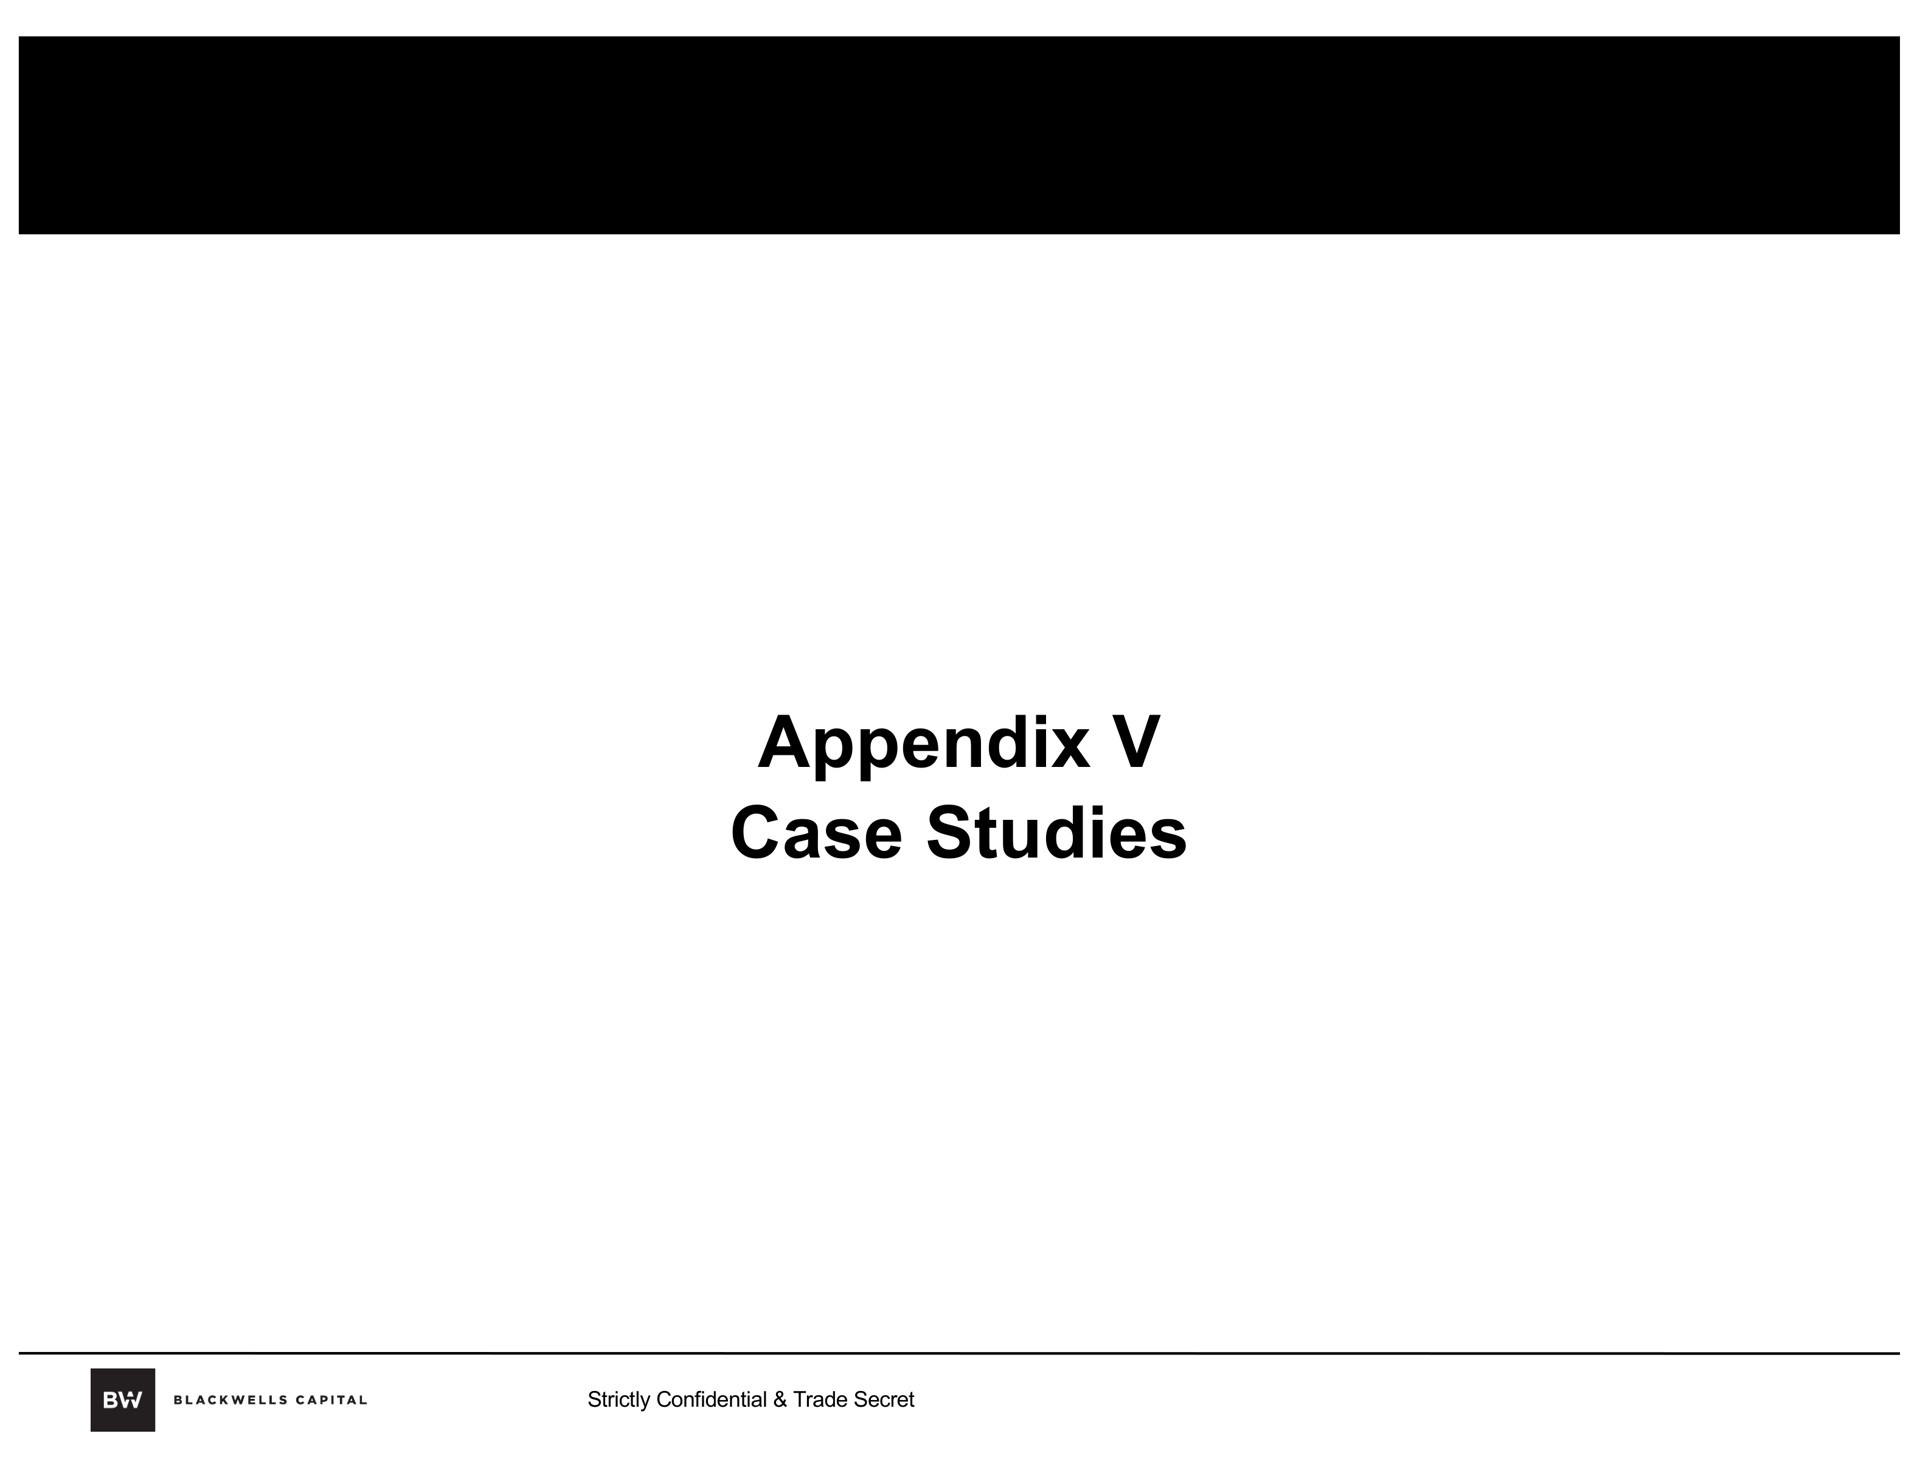 appendix case studies | Blackwells Capital